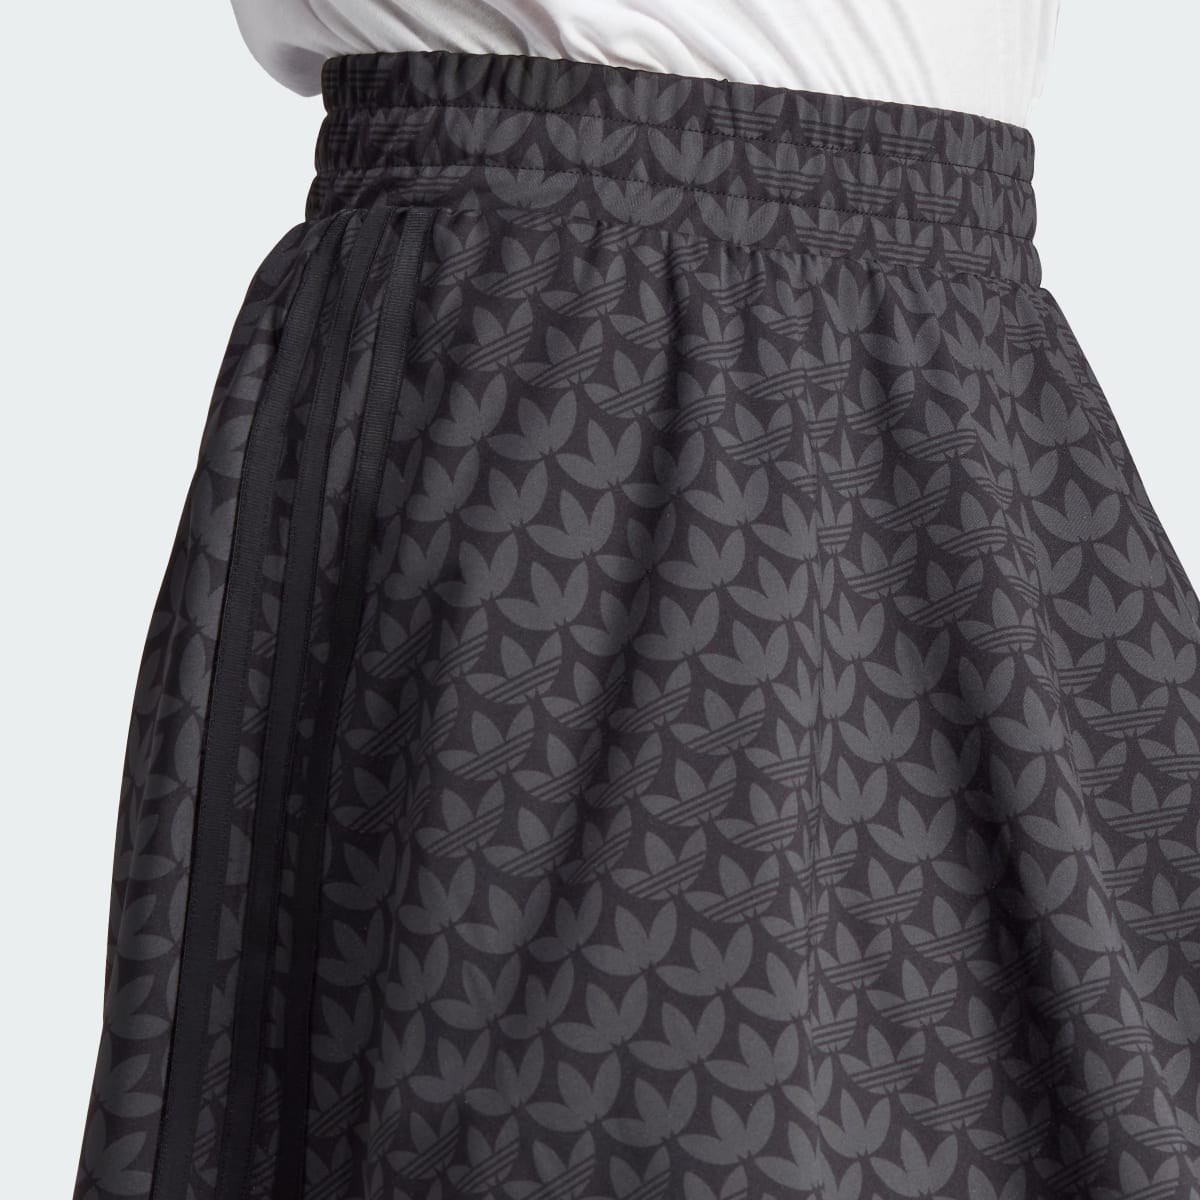 Adidas Trefoil Monogram Skirt. 5